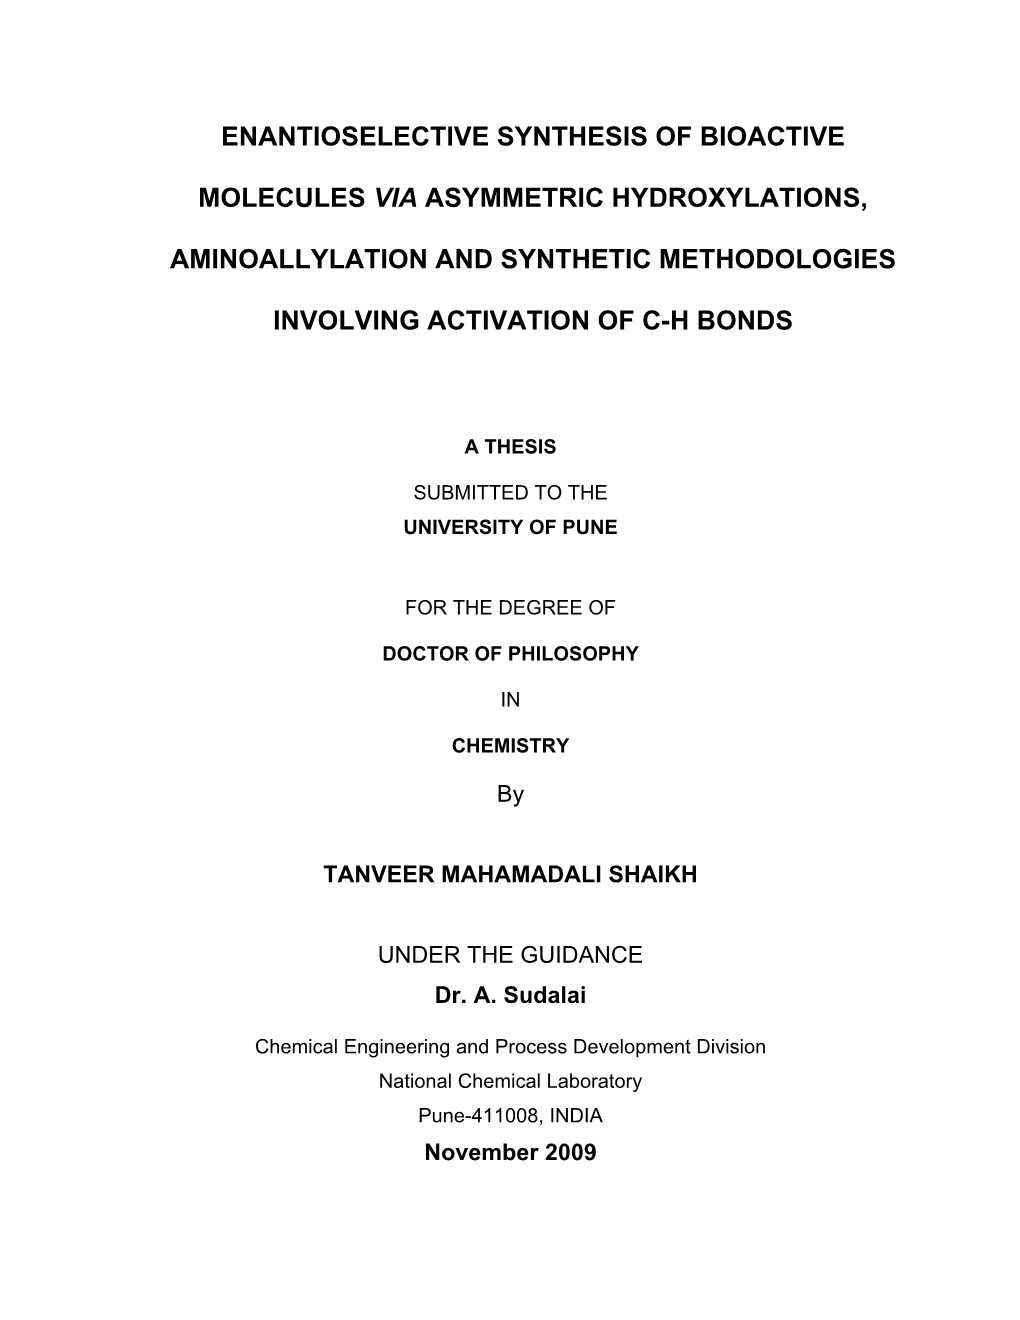 Enantioselective Synthesis of Bioactive Molecules Via